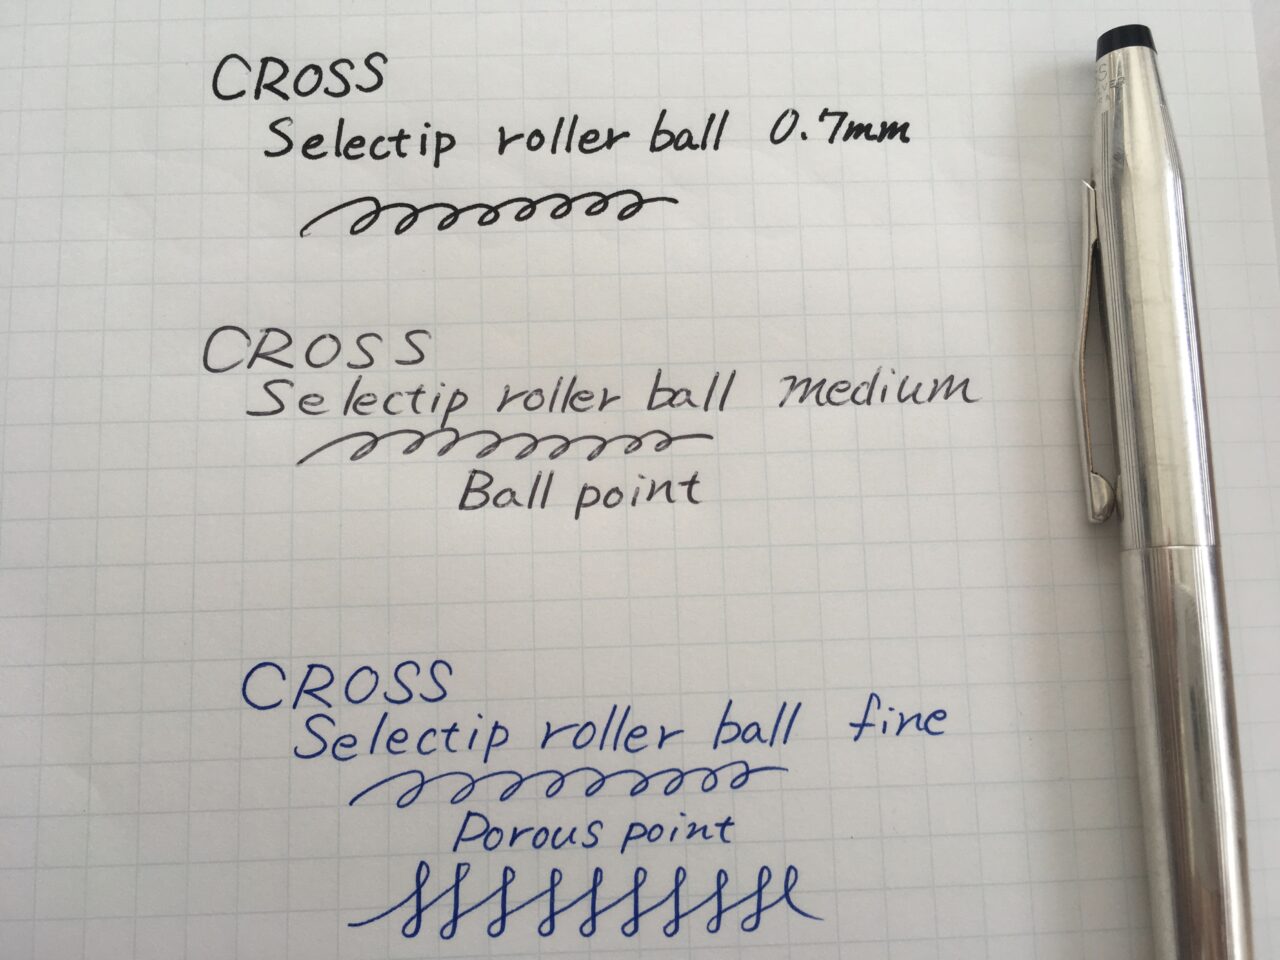 ペン1本で筆記バリエーションさまざま!CROSS(クロス)セレクチップ